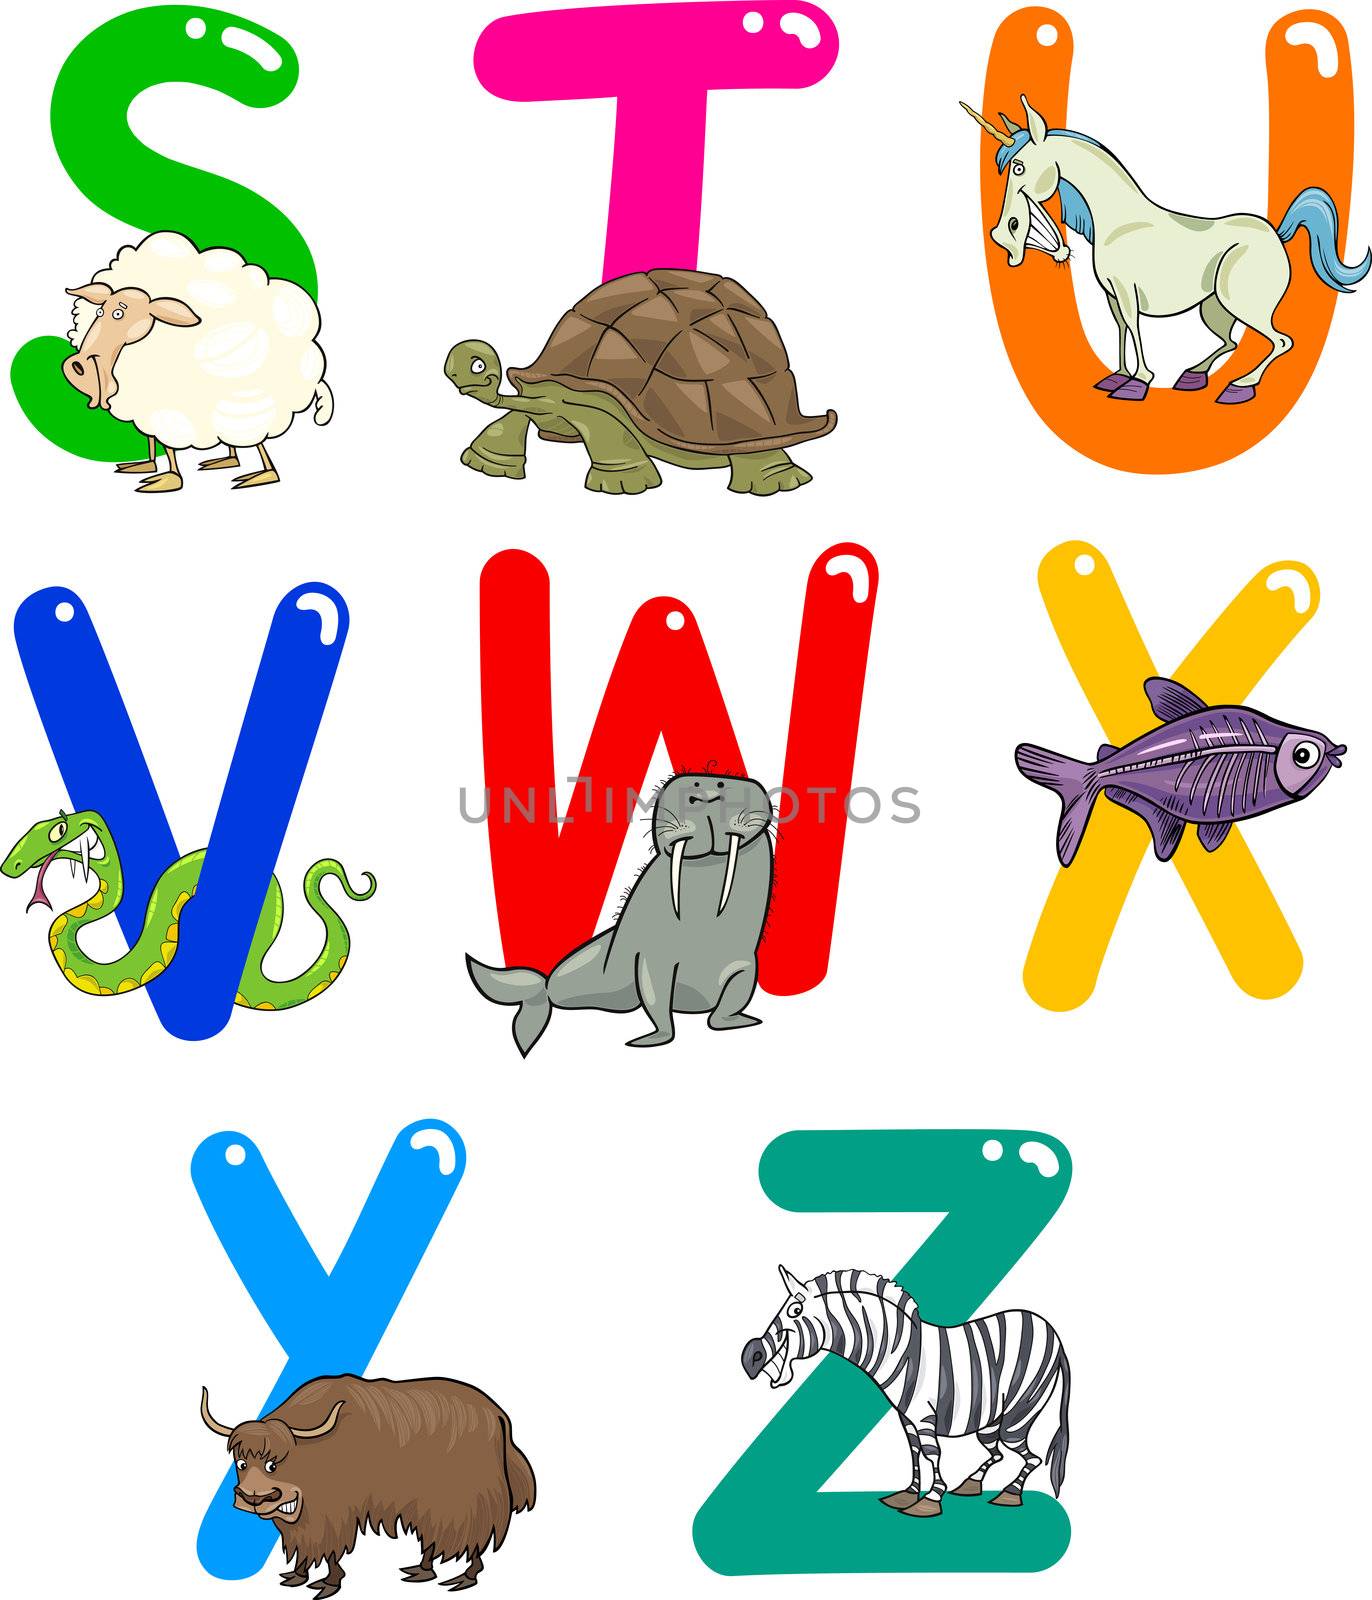 Cartoon Alphabet with Animals by izakowski